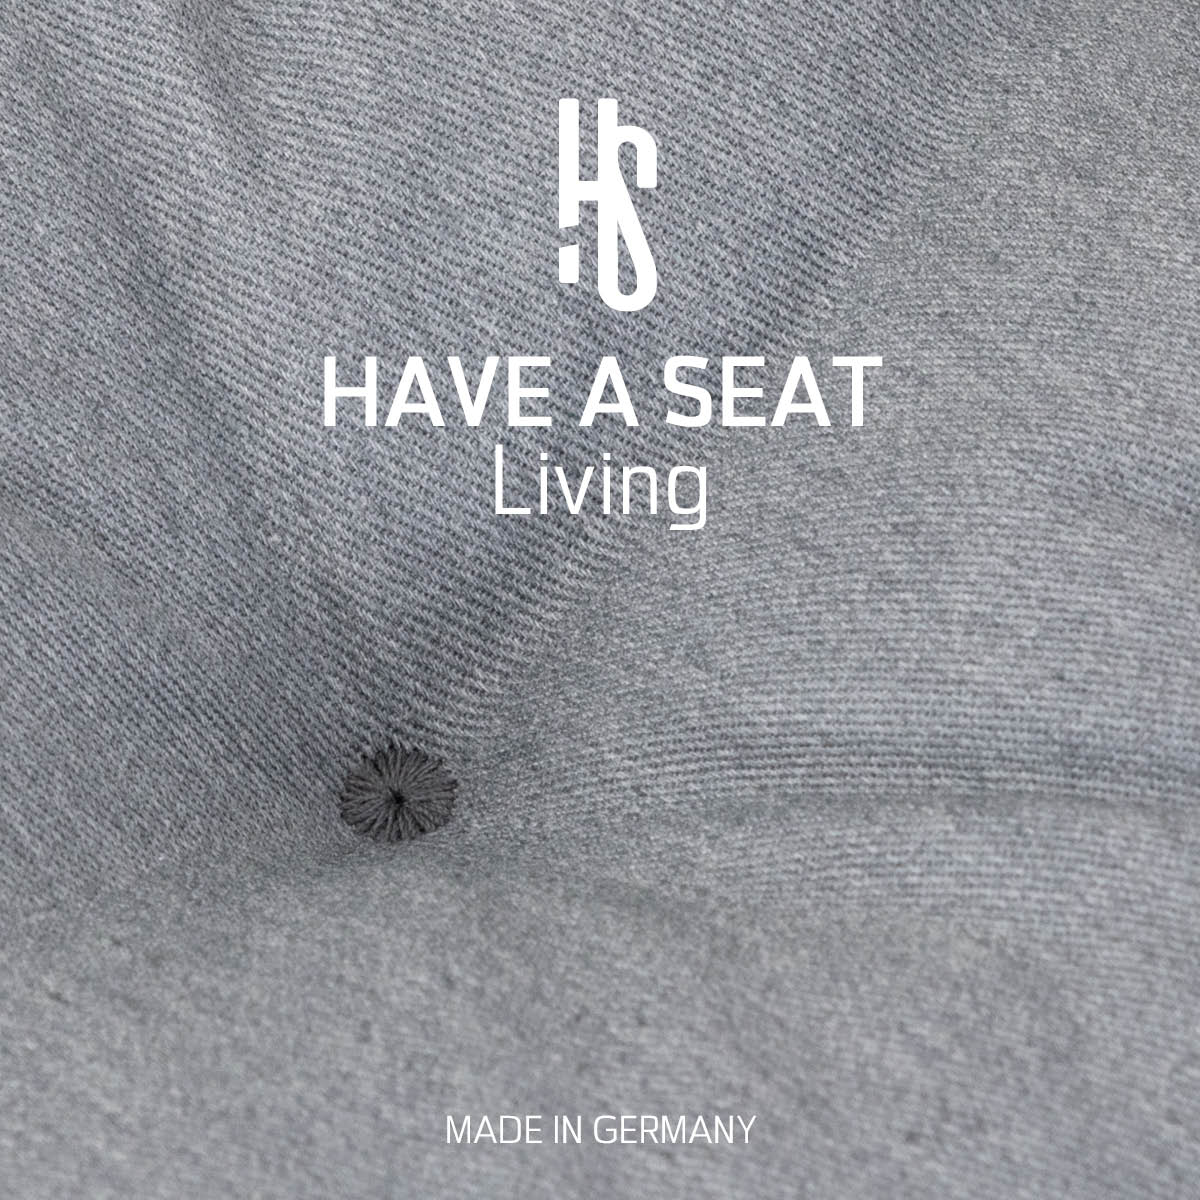 Sitzpolster Auflage hellgrau für Sitzbank aus hautfreundlichem, strapazierfähigem Baumwollmischgewebe | HAVE A SEAT Living - Made in Germany